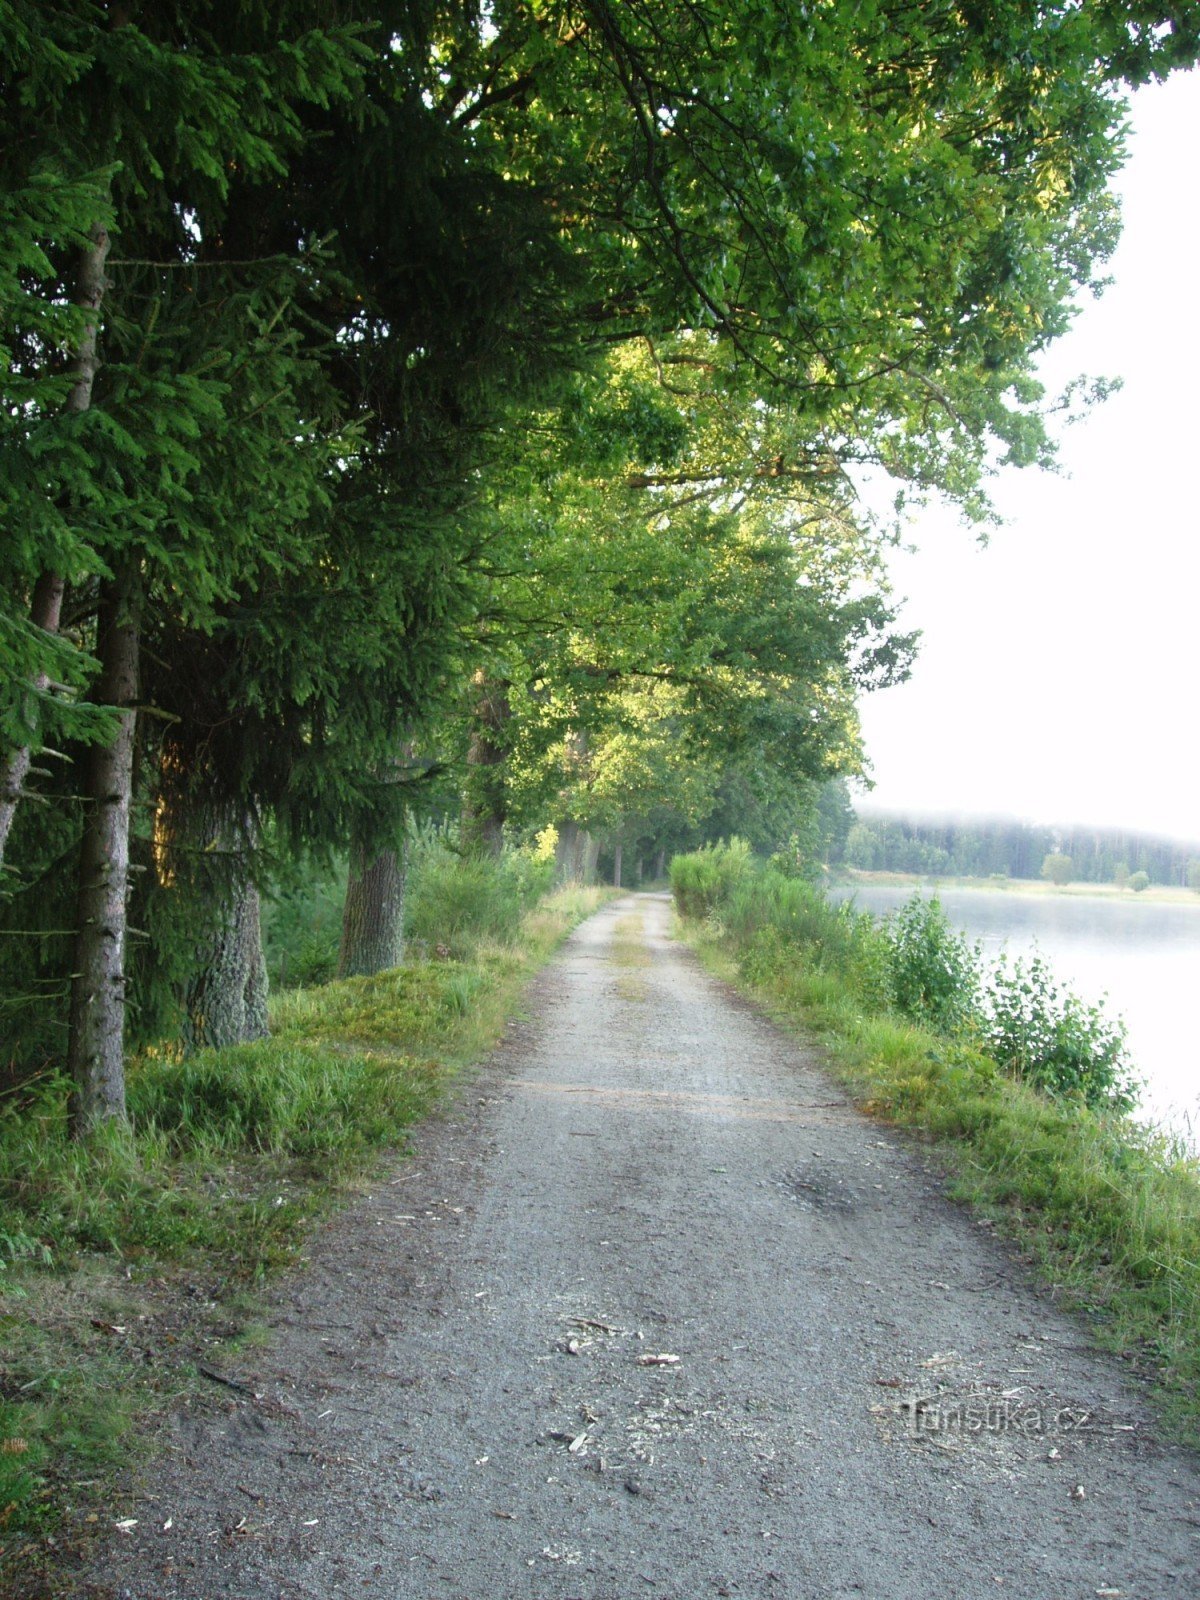 Am Damm von Svobodné rybník verläuft ein Waldgrenzweg, der Medenica verbindet